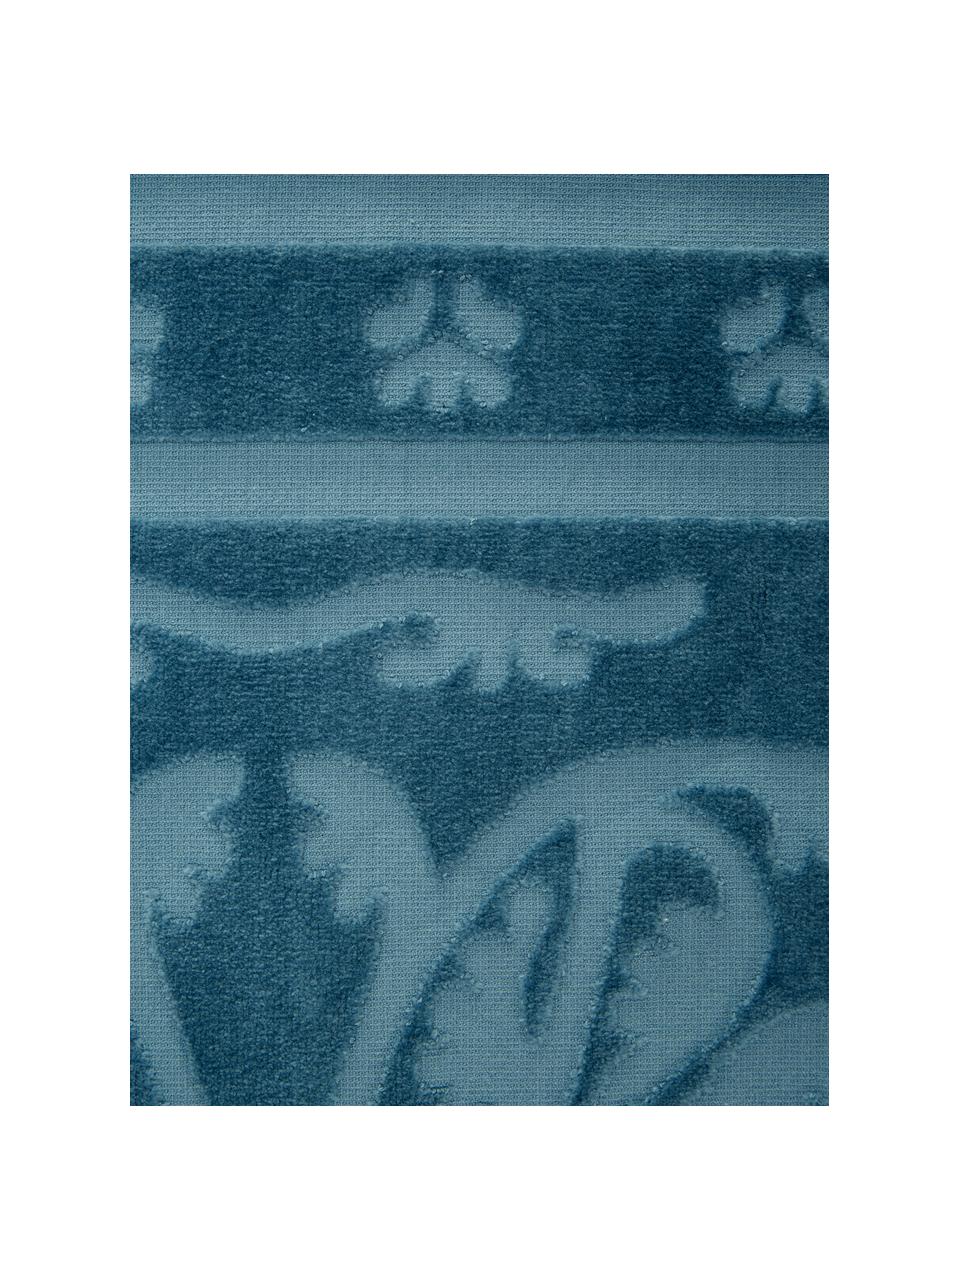 Handtuch Sumatra mit Hoch-Tief-Muster in verschiedenen Größen, Blau, Handtuch, B 50 x L 100 cm